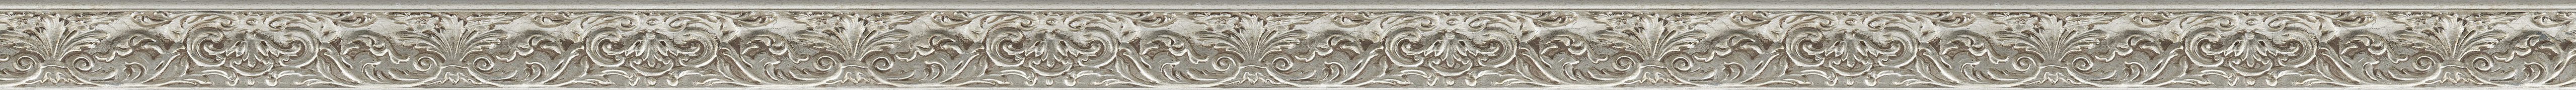 Κομψή κορνίζα με φύλλο ασήμι frame